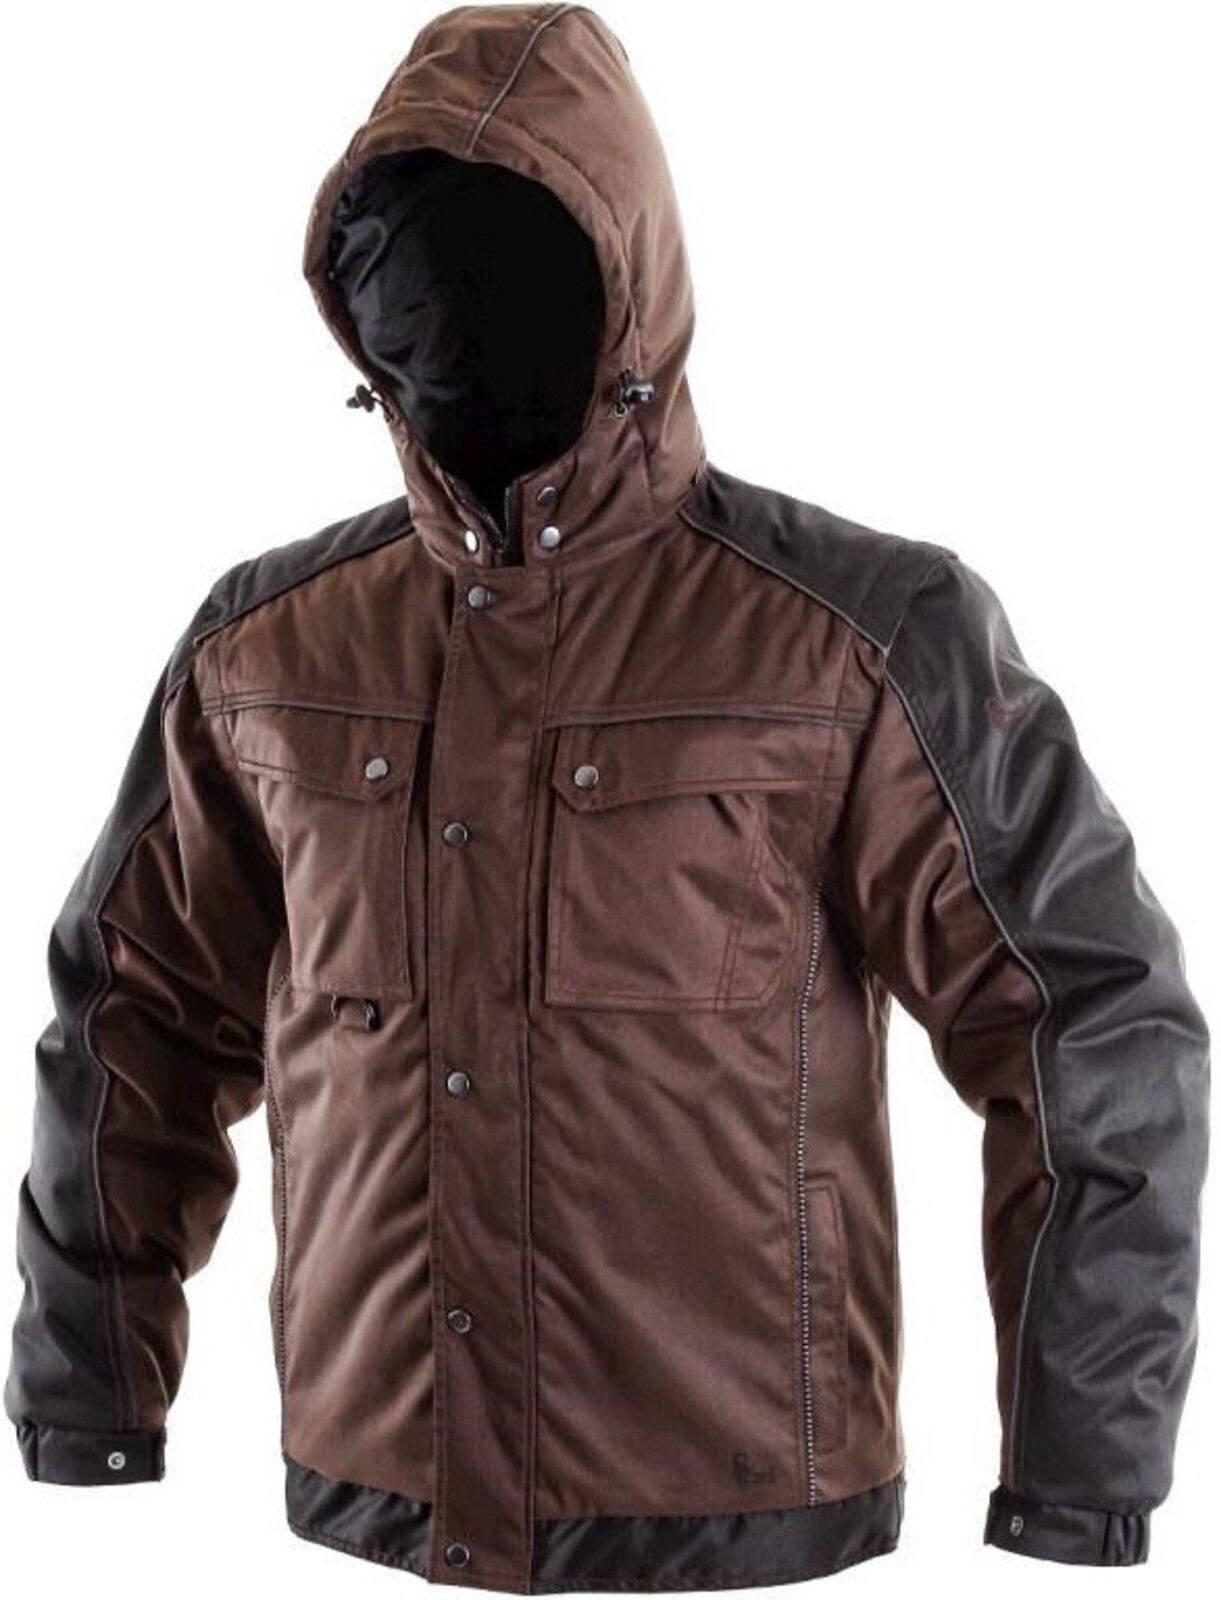 Pánska zimná bunda CXS Irvine 2v1 - veľkosť: 4XL, farba: hnedá/čierna